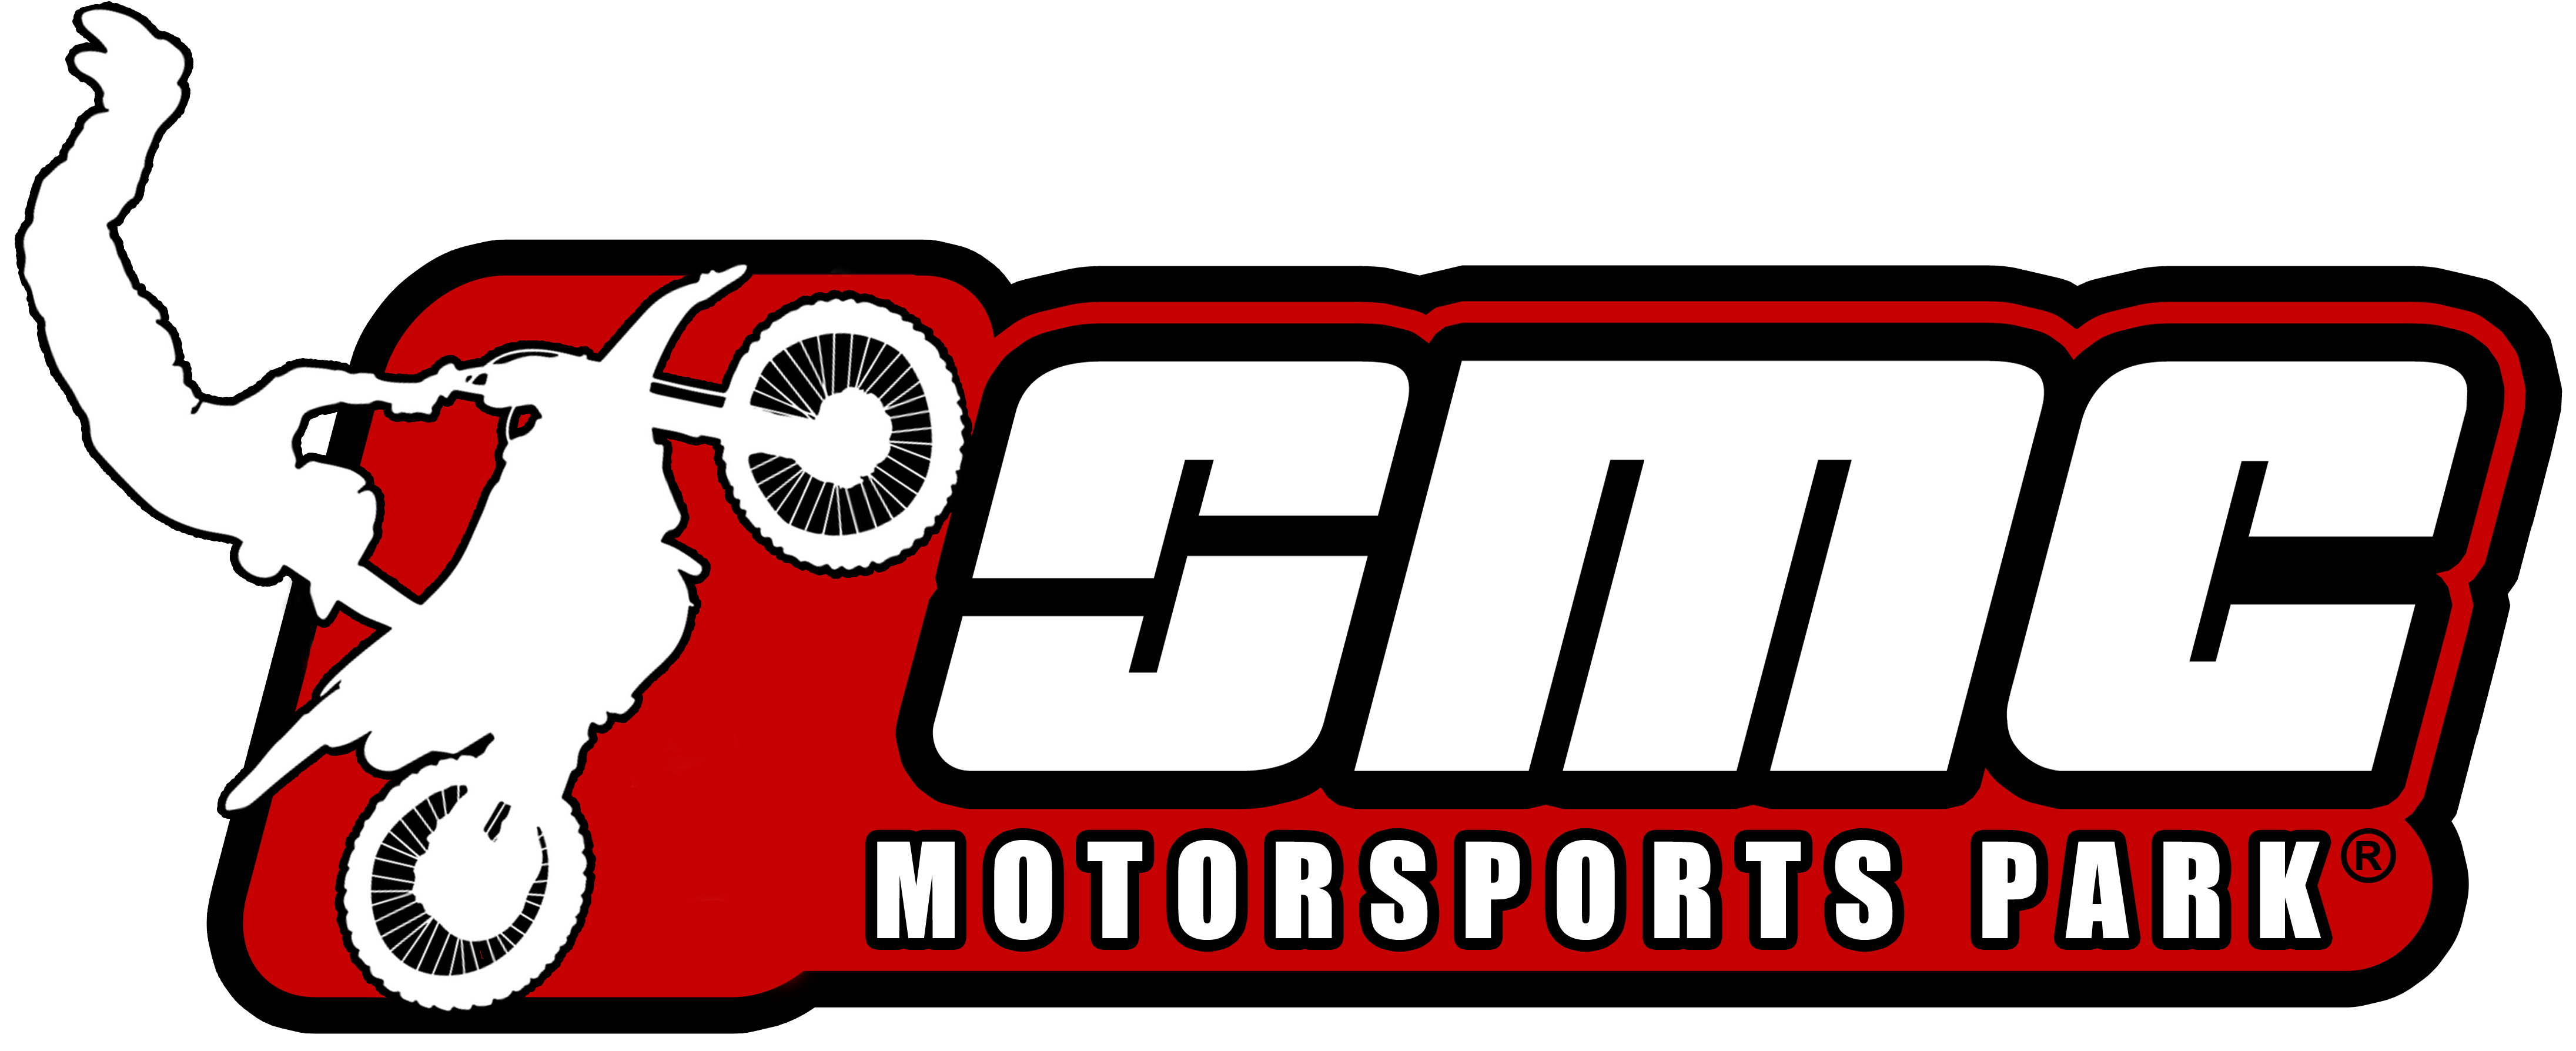 SMC Motorsports Park – Tor Motocross / Pit Bike – Wypożyczalnia Motocykli Pit Bike – Wierzchucin Królewski 21